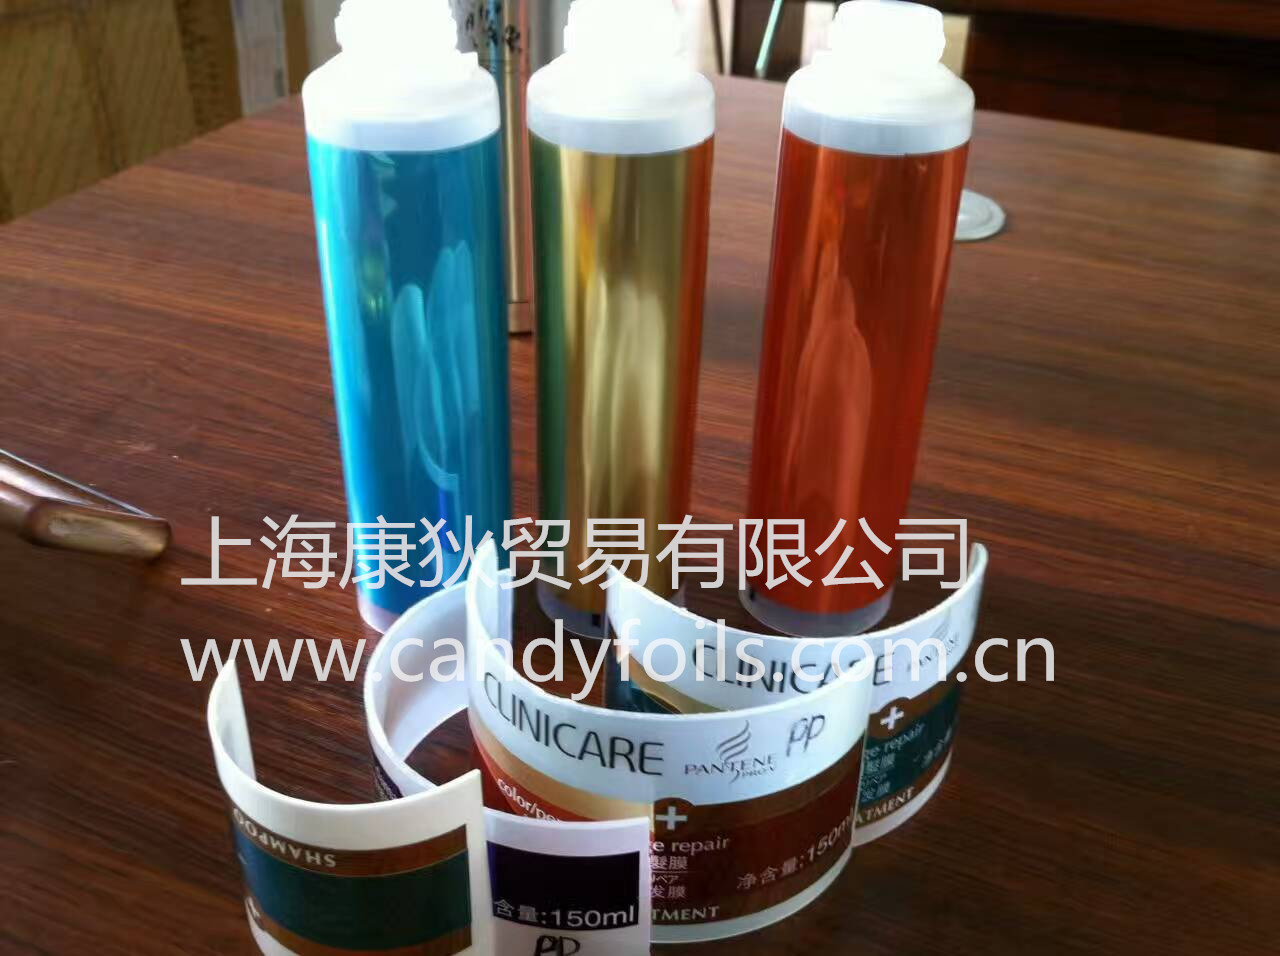 上海化妆品软管烫金纸 品牌商*烫金纸 上海康狄贸易有限公司